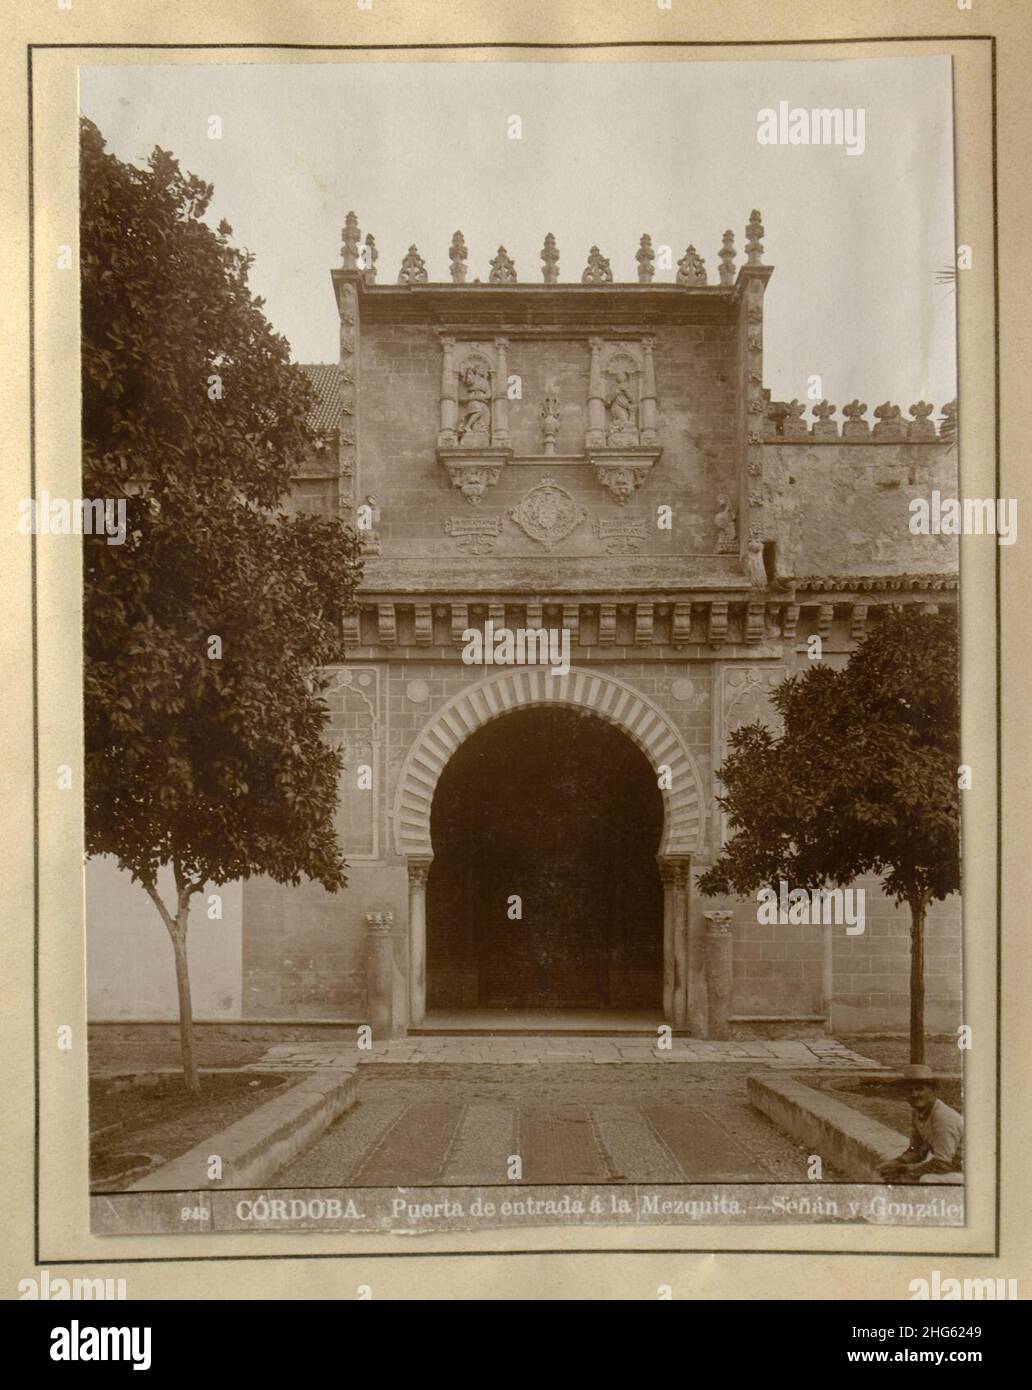 Señan y Gonzalez - Córdoba- Puerta de entrada a la Mezquita. Stock Photo